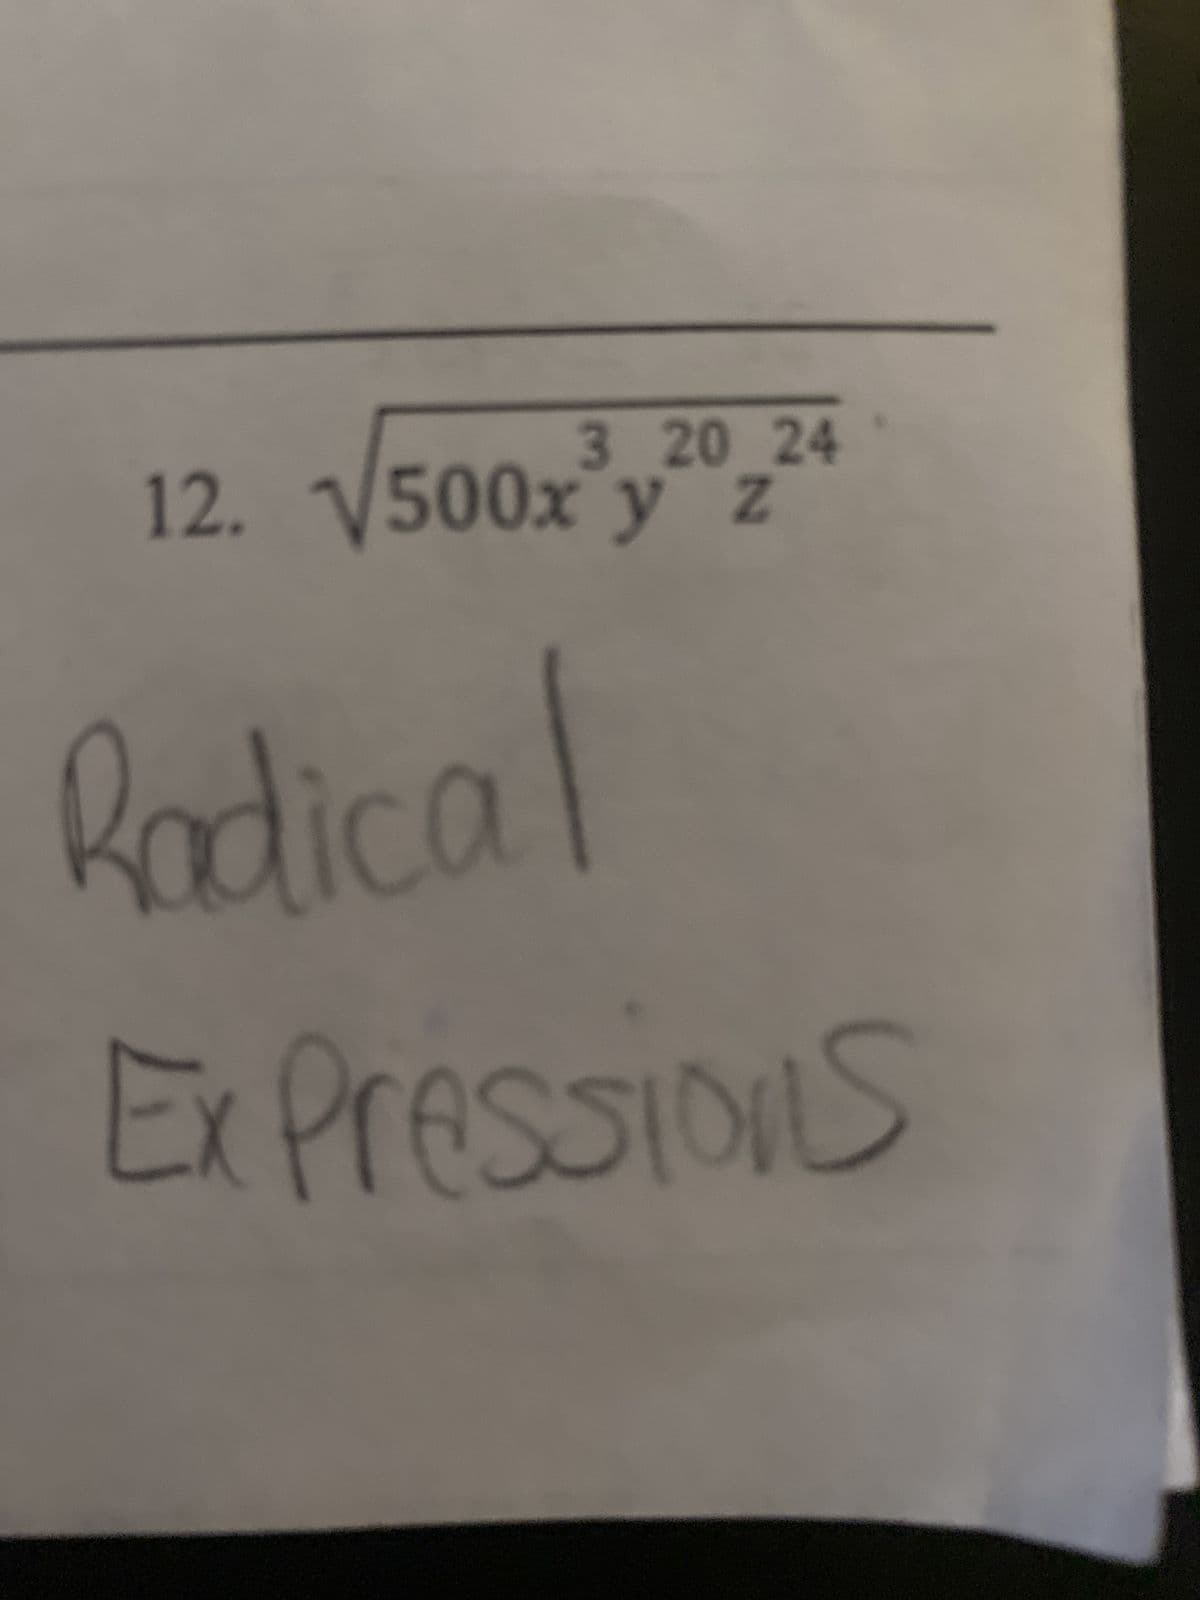 3 20 24
12. √500x y z
Radical
Ex Pressions